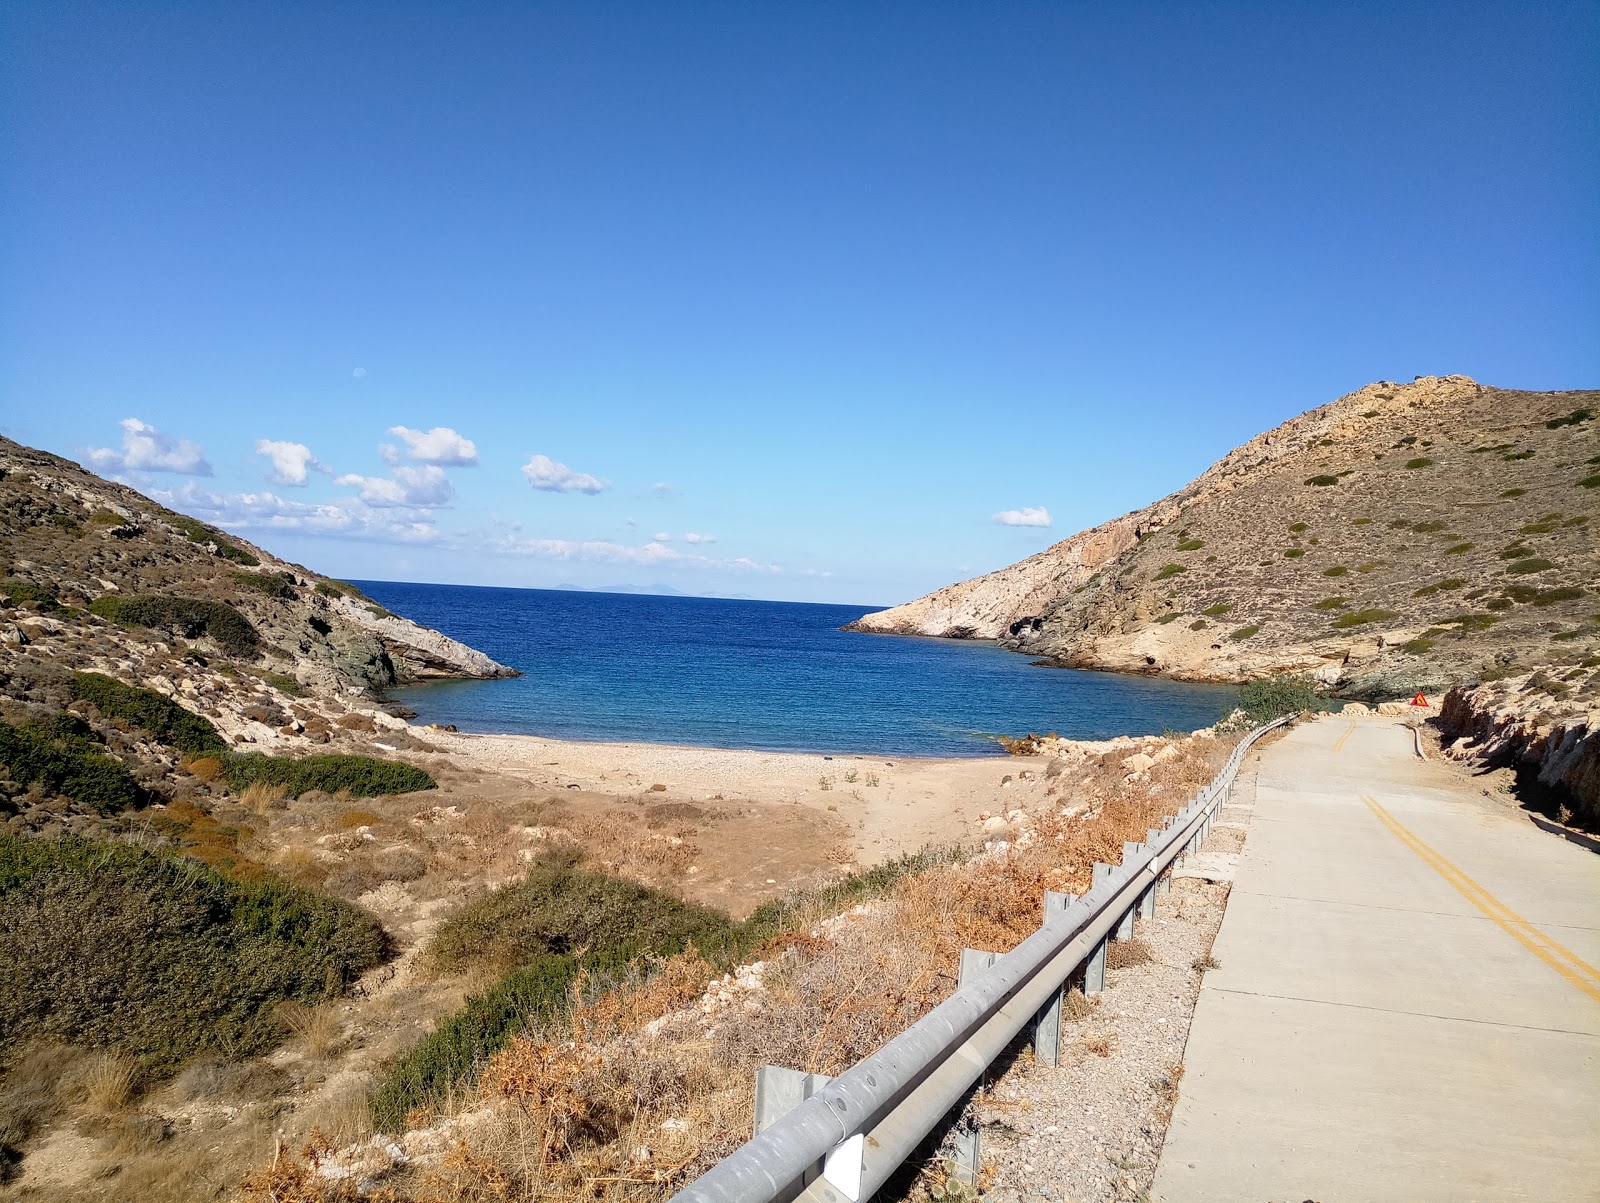 Almyros beach'in fotoğrafı parlak kum yüzey ile